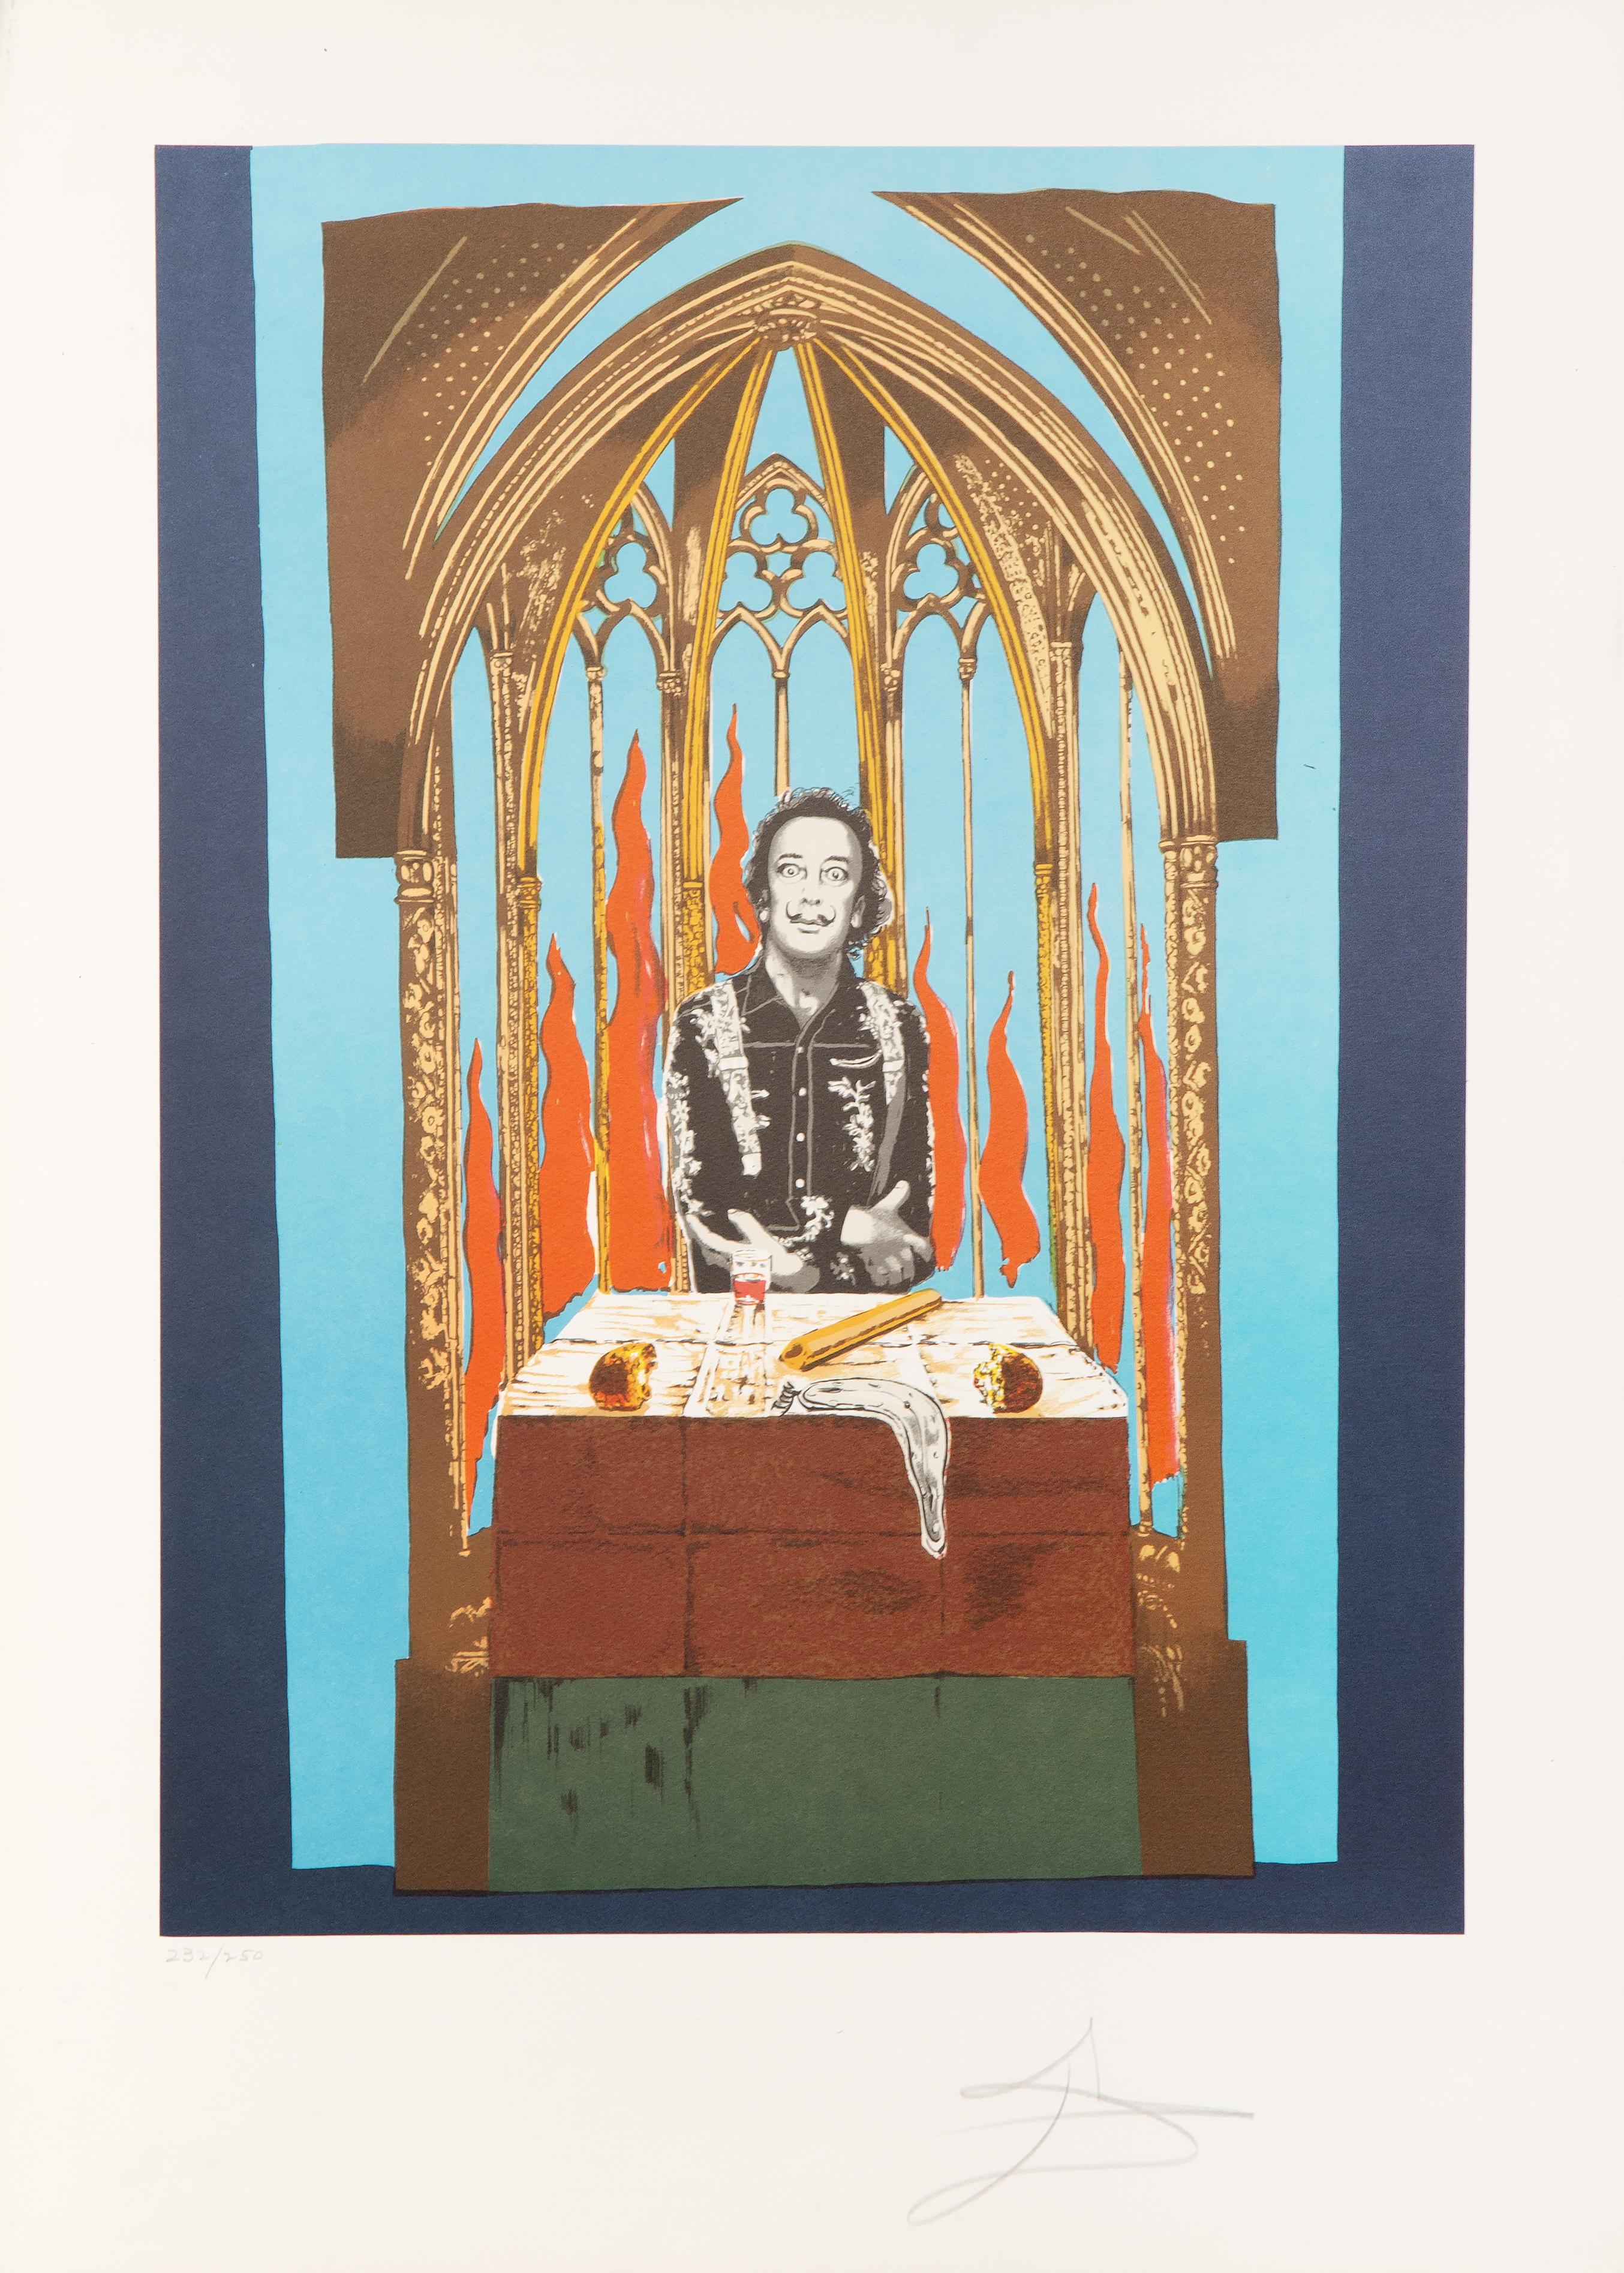 Dalis Inferno (Der Zauberer), signierte Lithographie von Salvador Dali